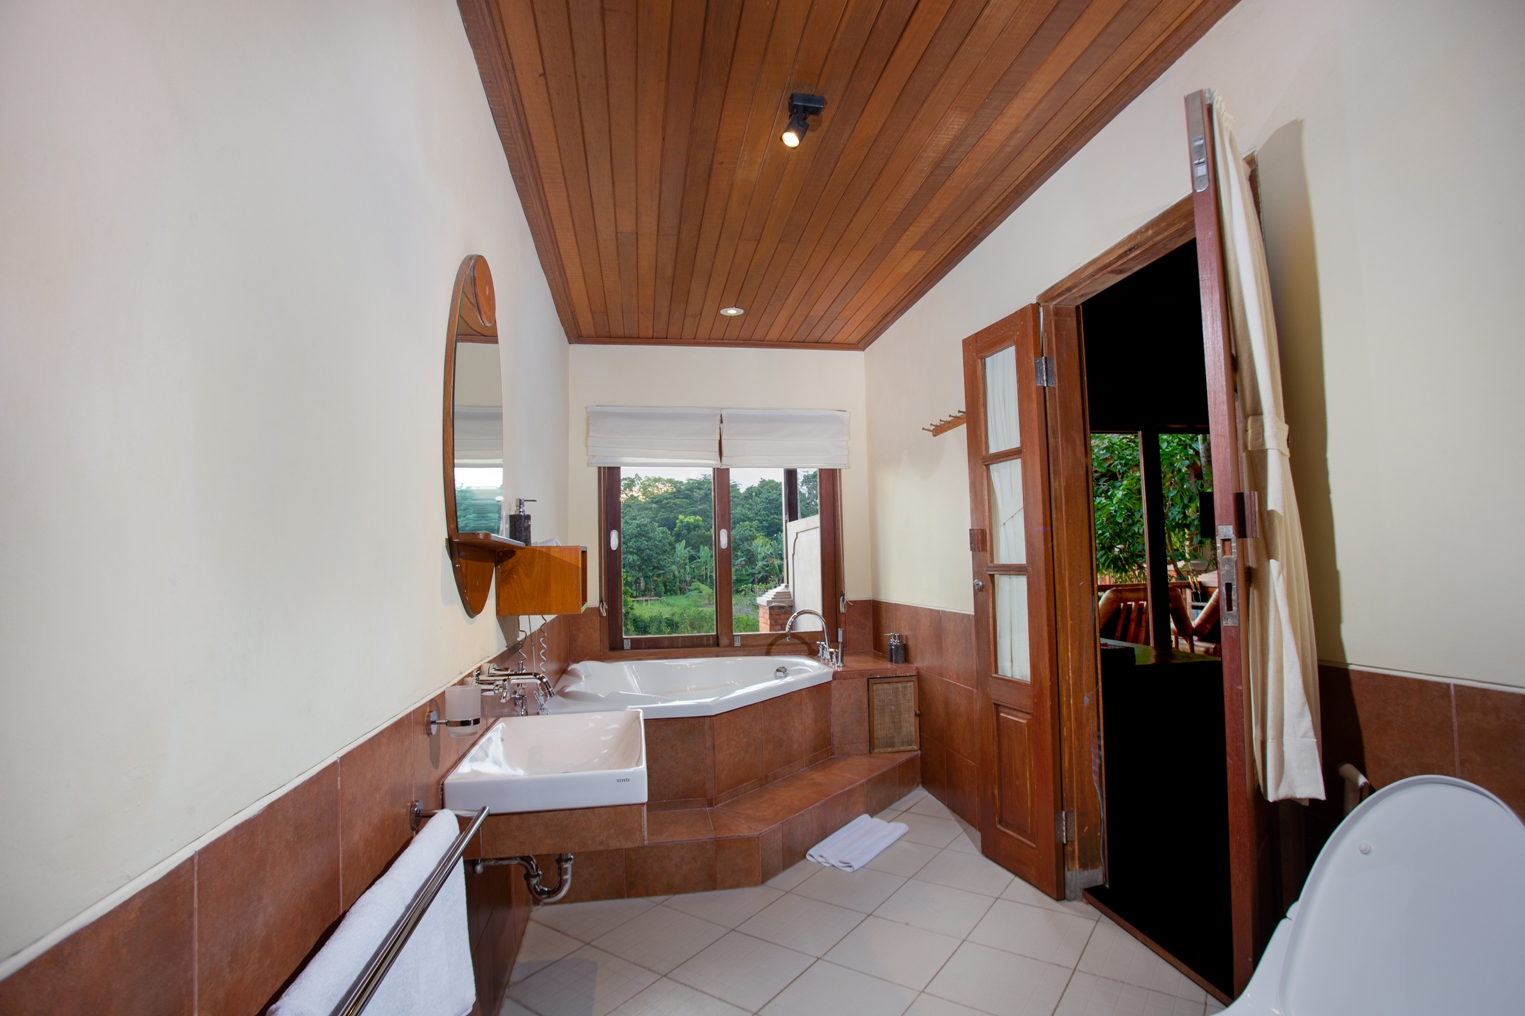 Bathroom - Super deluxe wooden